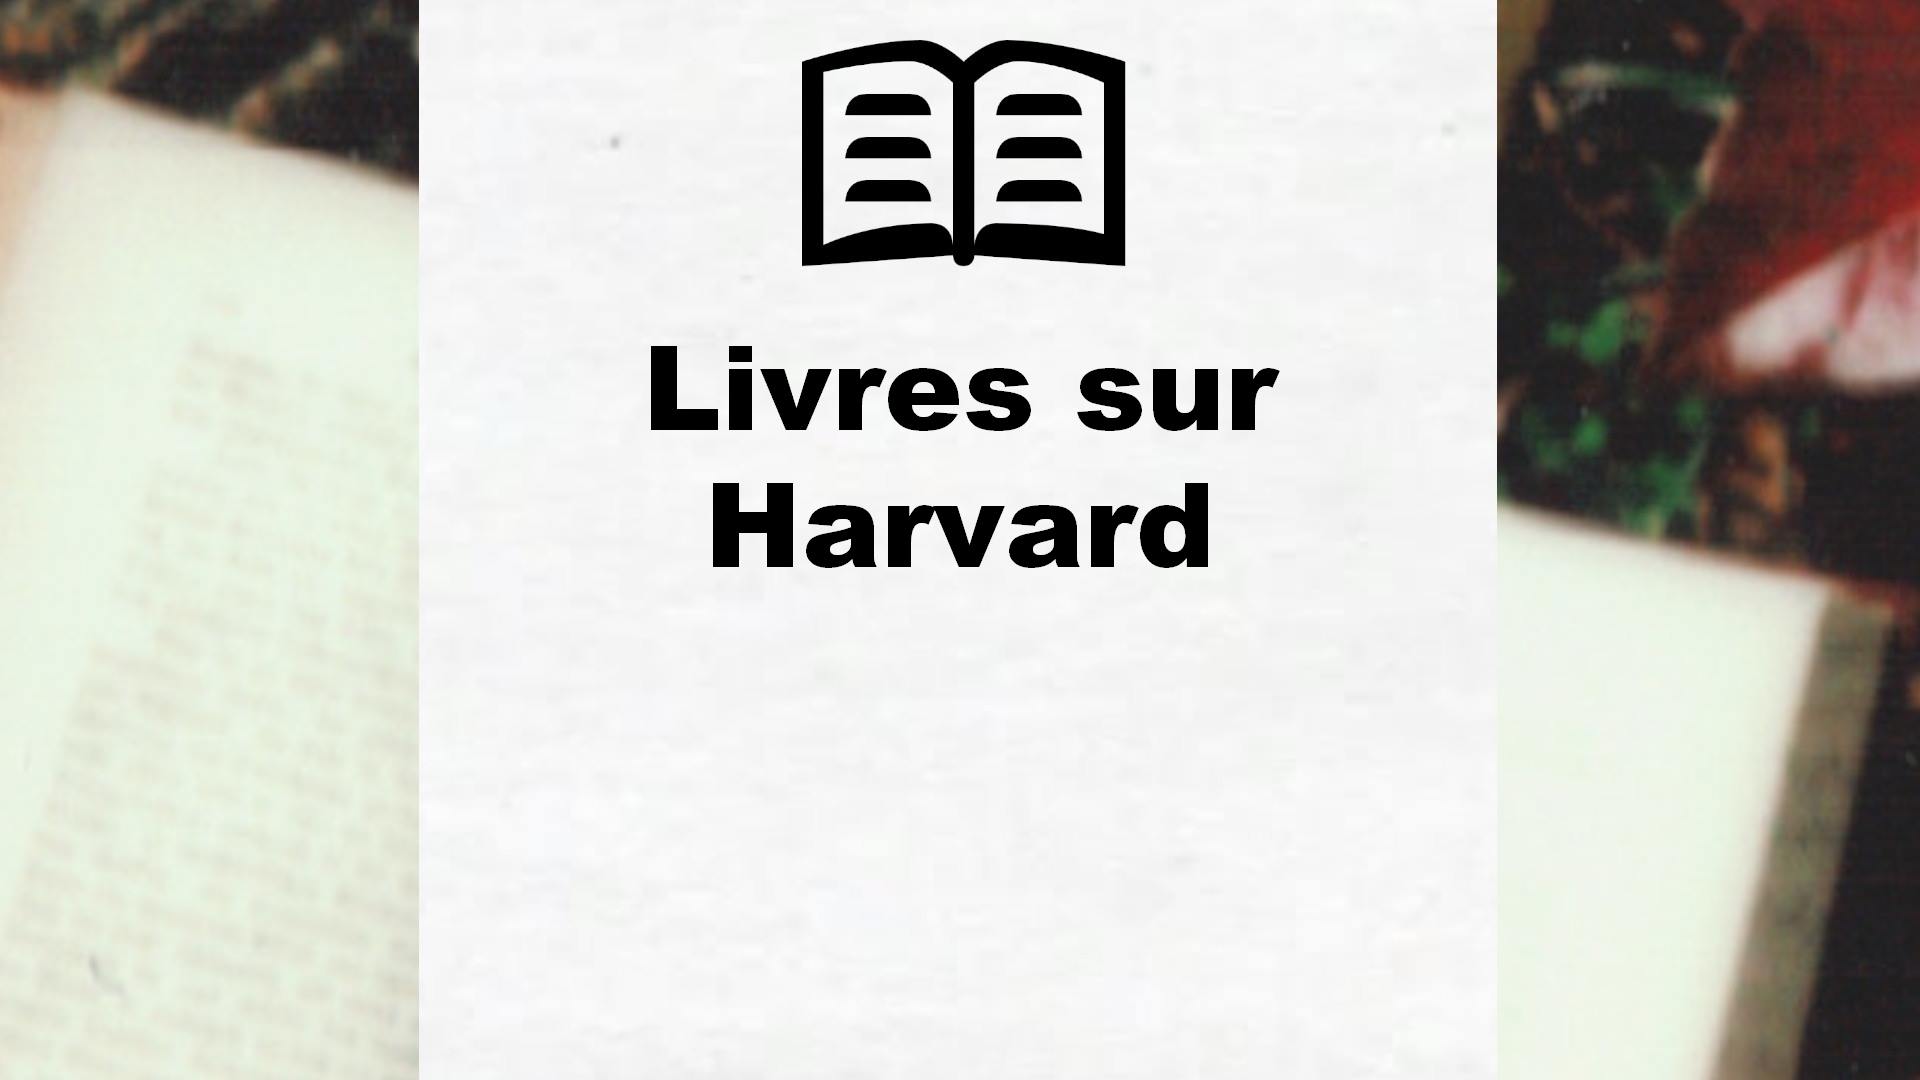 Livres sur Harvard